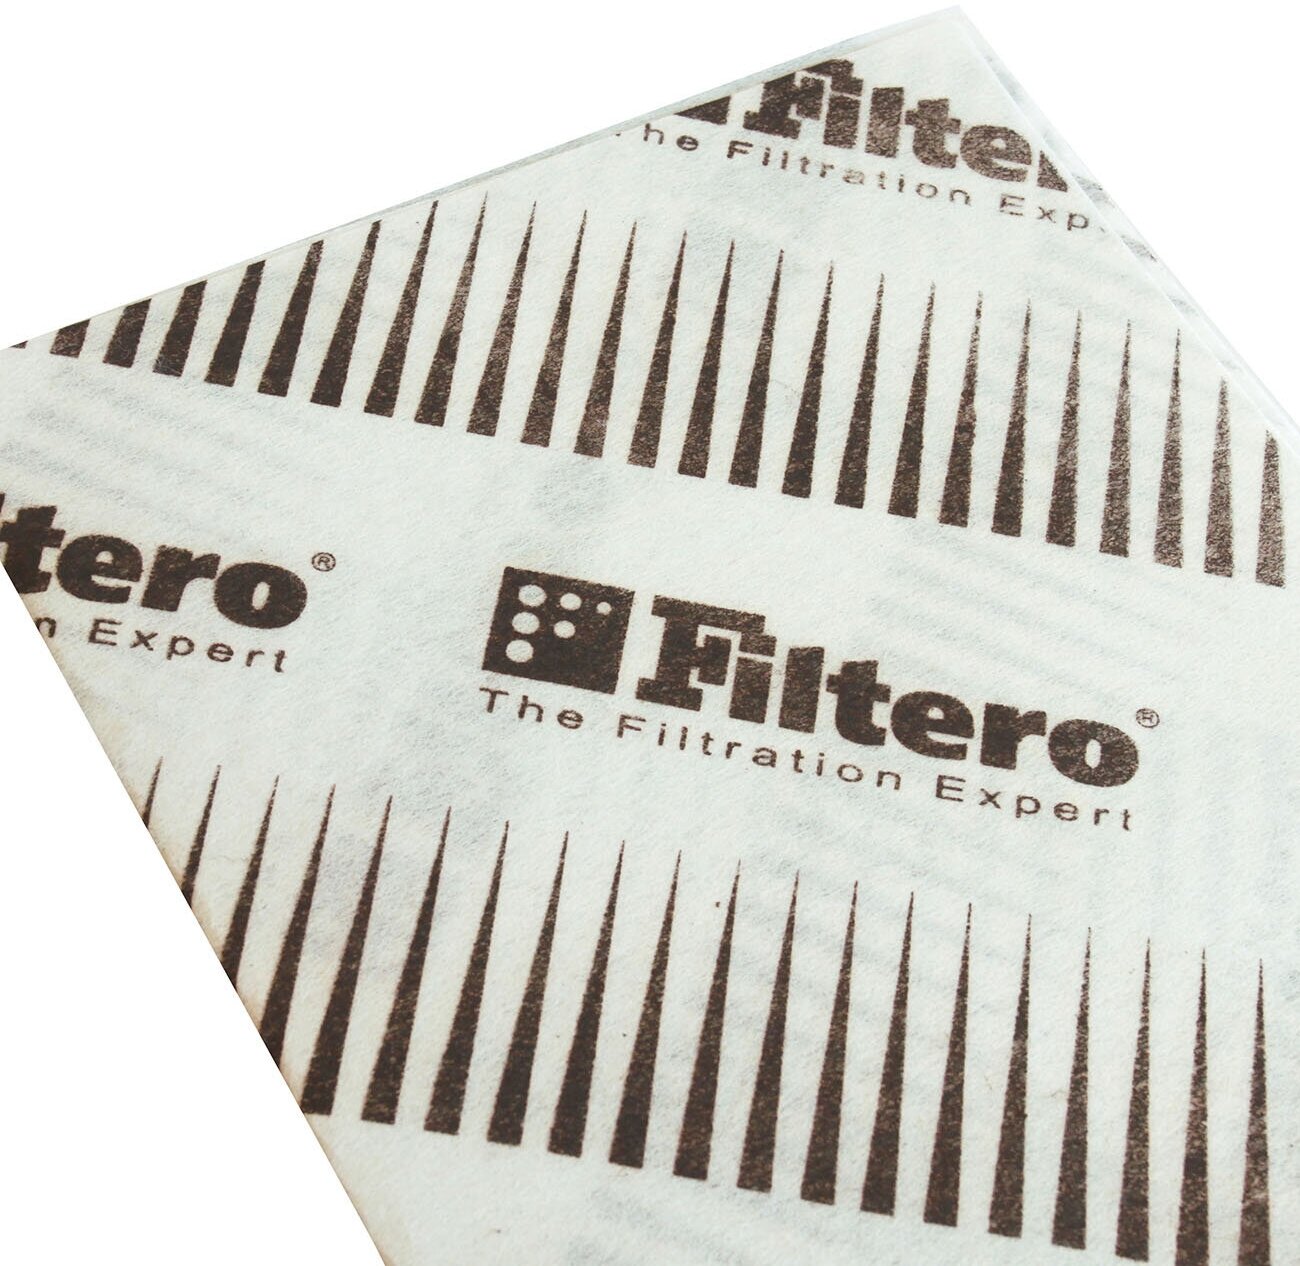 Фильтр жиропоглощающий Filtero FTR 03